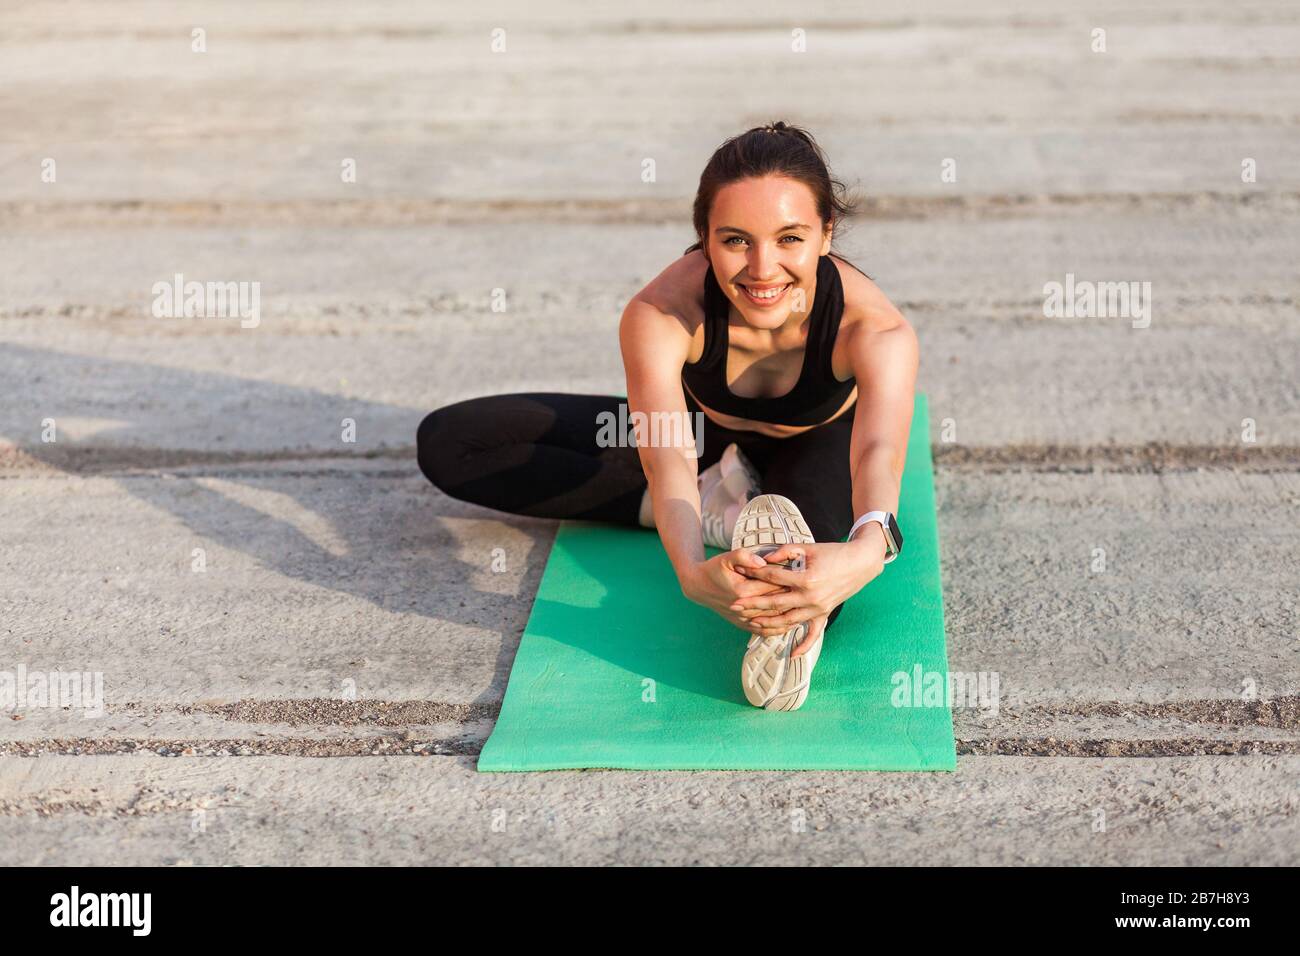 Fröhliche lächelnde Sportfrau in enger Sportswear, schwarzer Hose und Oberteil, praktizierendes Yoga, Kopf-Knie-Pose, berührende Zehen, ausdehnendes Bein und Stockfoto